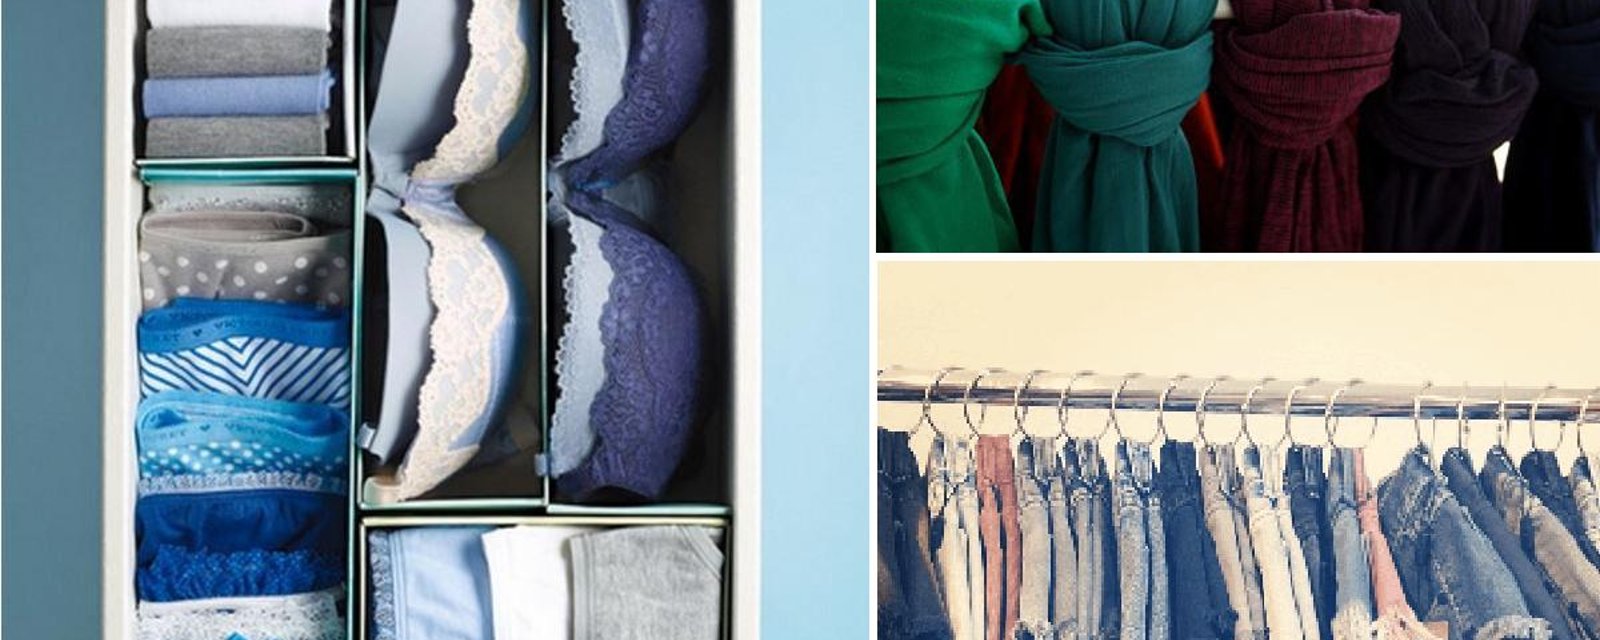 16 méthodes ingénieuses pour bien organiser vos tiroirs et garde-robes